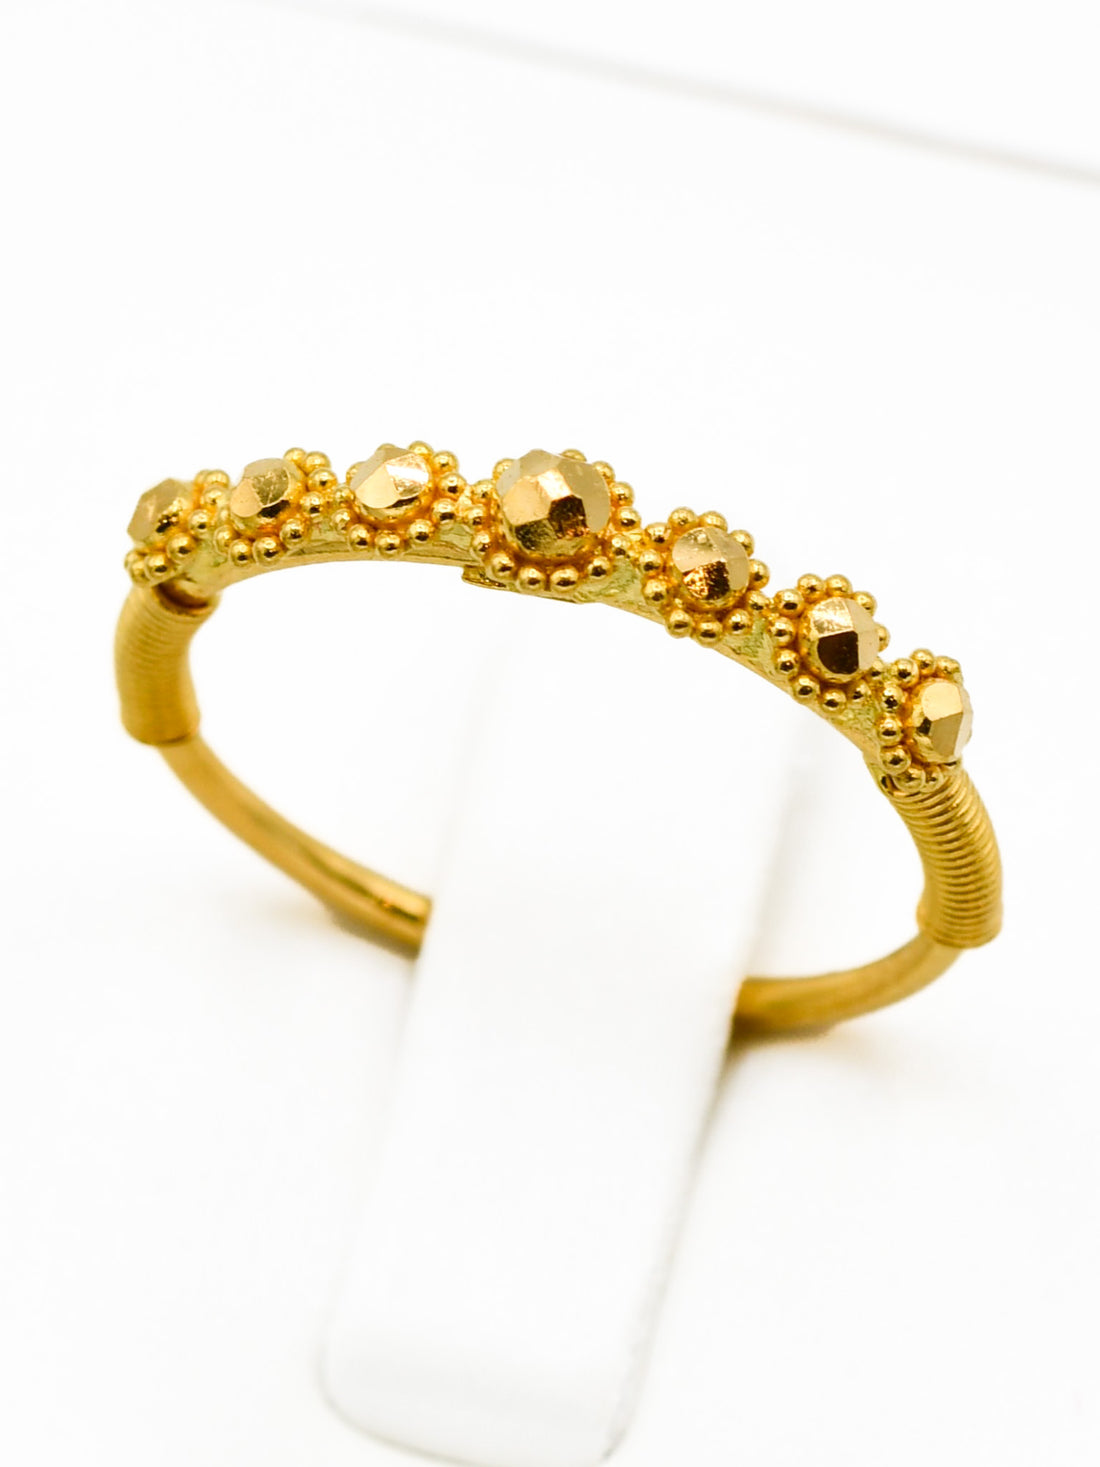 22ct Gold Ladies Ring - Roop Darshan